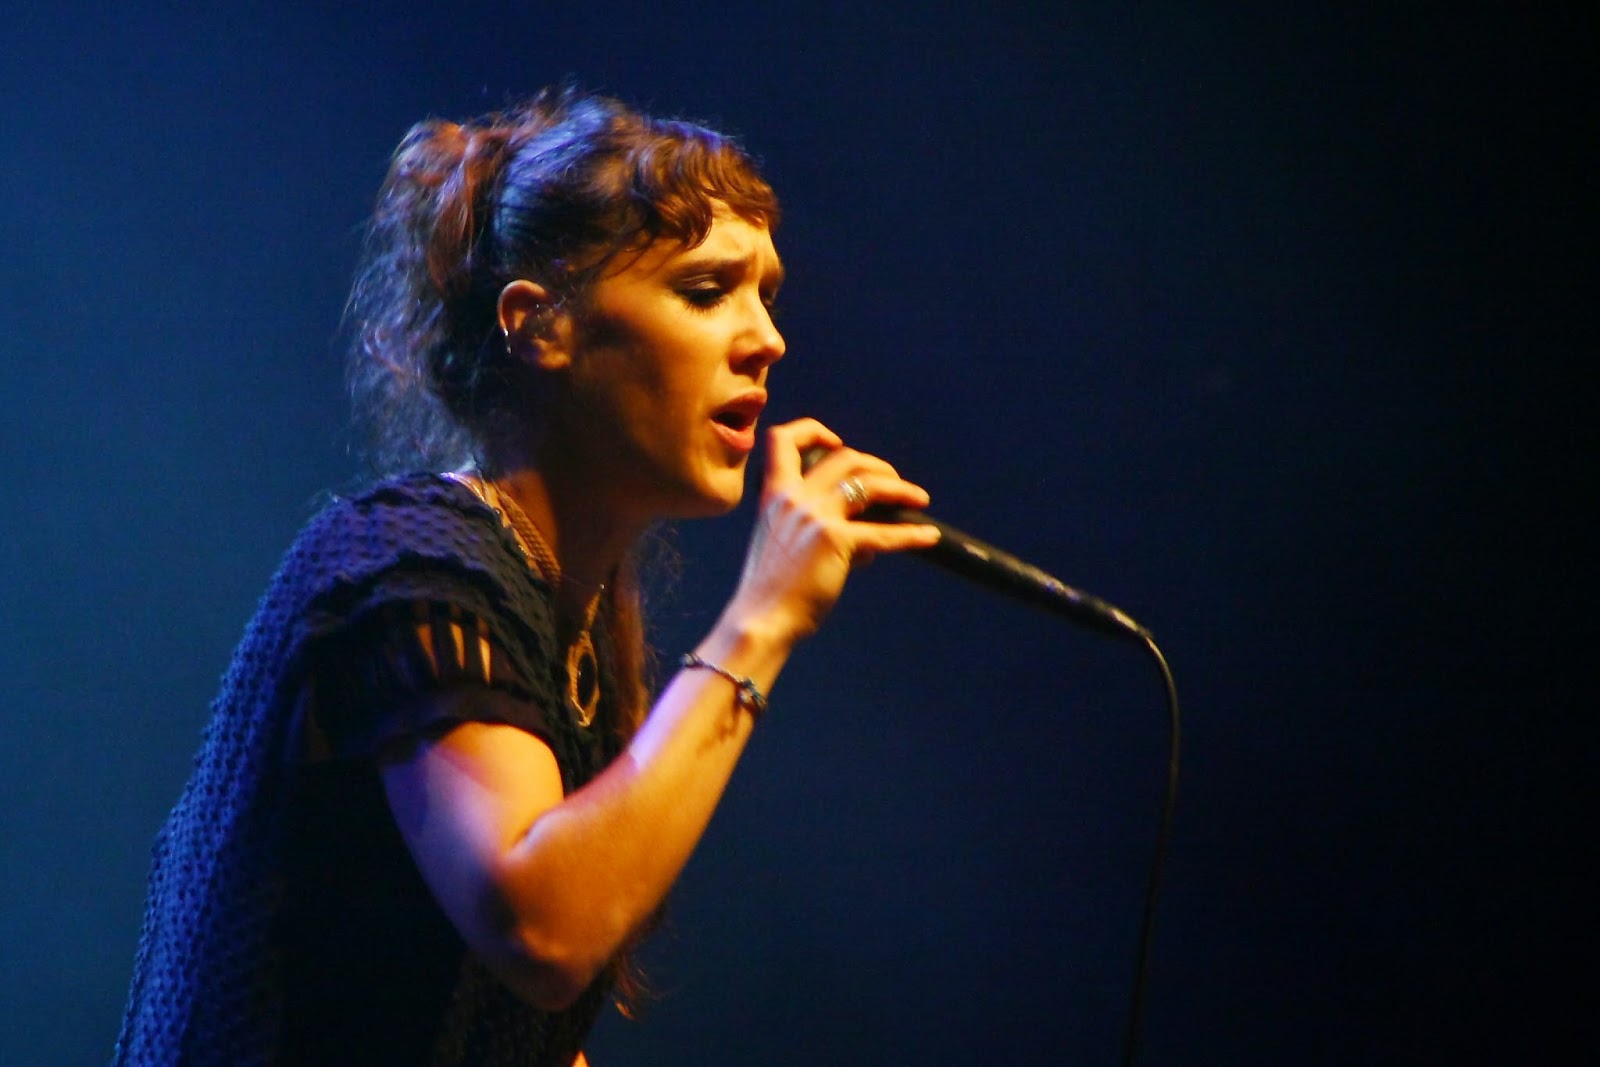 Zaz cantando en vivo (2011)